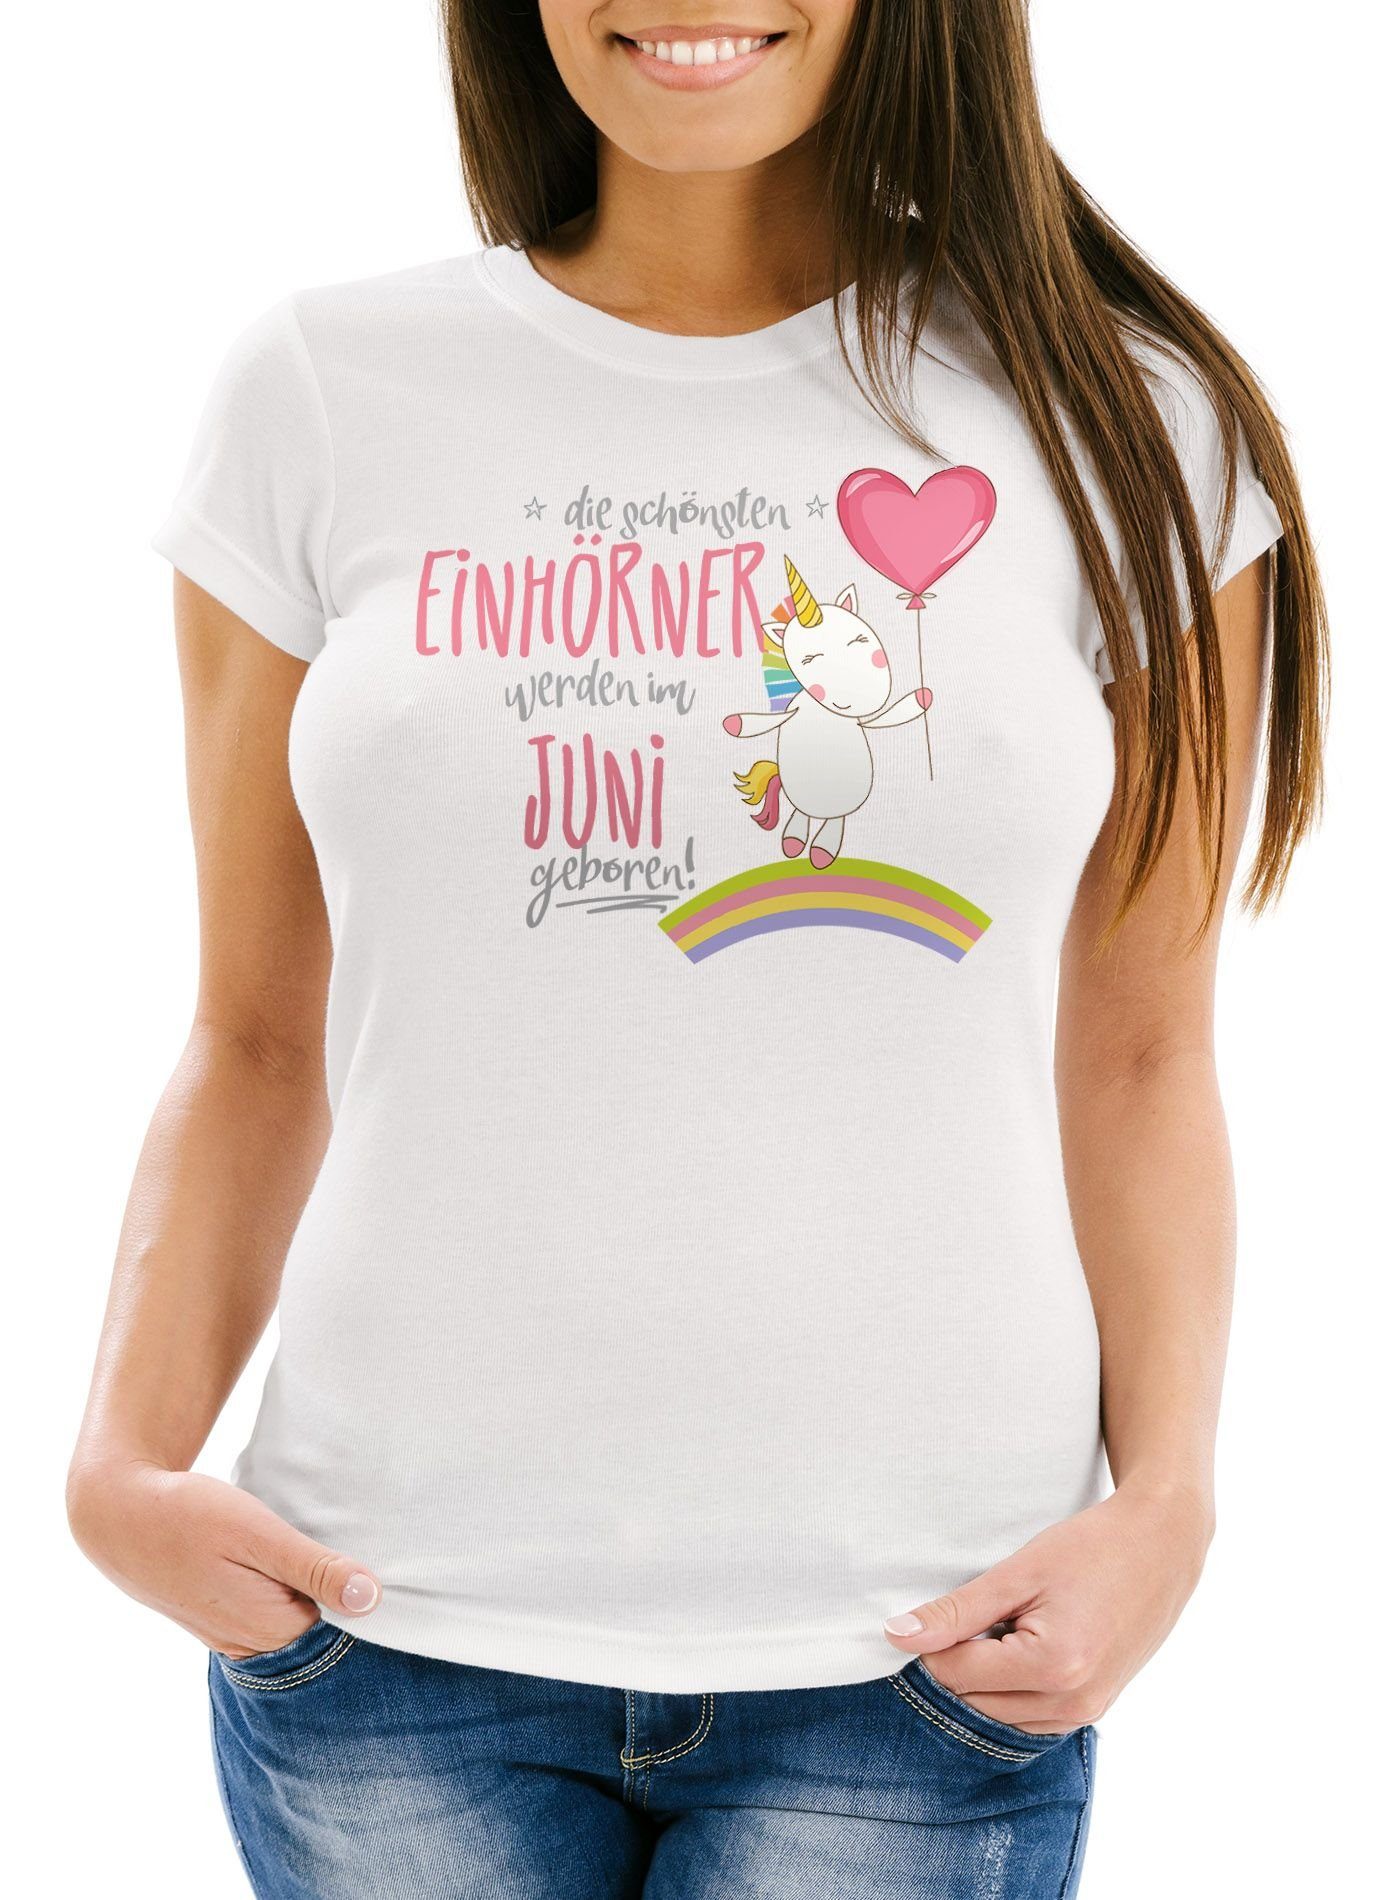 Slim Print-Shirt werden weiß Damen T-Shirt Fit Print schönsten Moonworks® geboren im Einhörner Juni Geschenk Geburtstag MoonWorks die mit